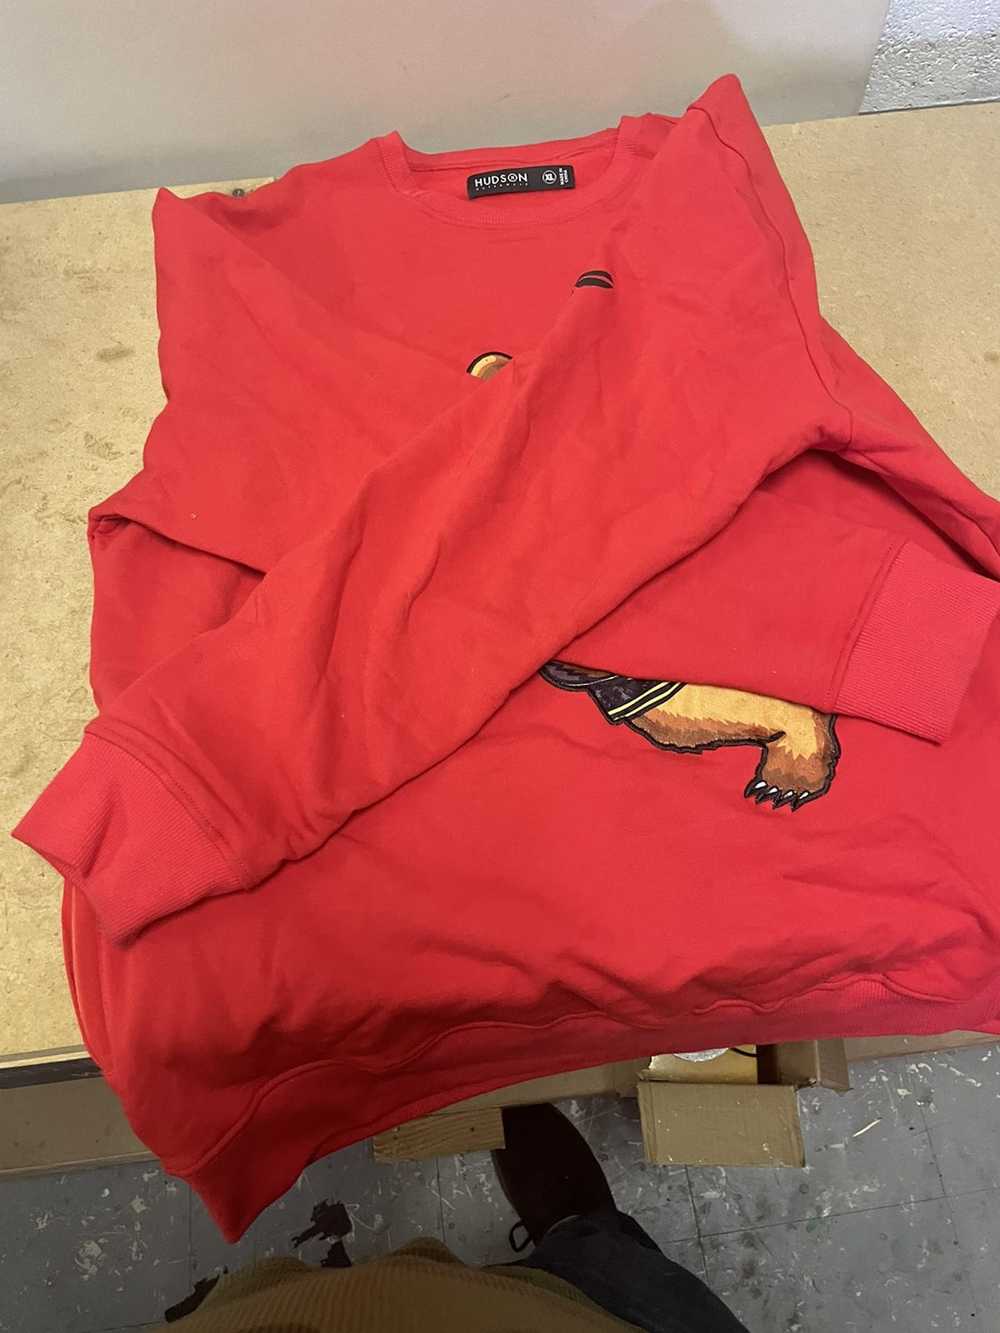 Hudson Outerwear Hudson sweatshirt red Size Large… - image 4